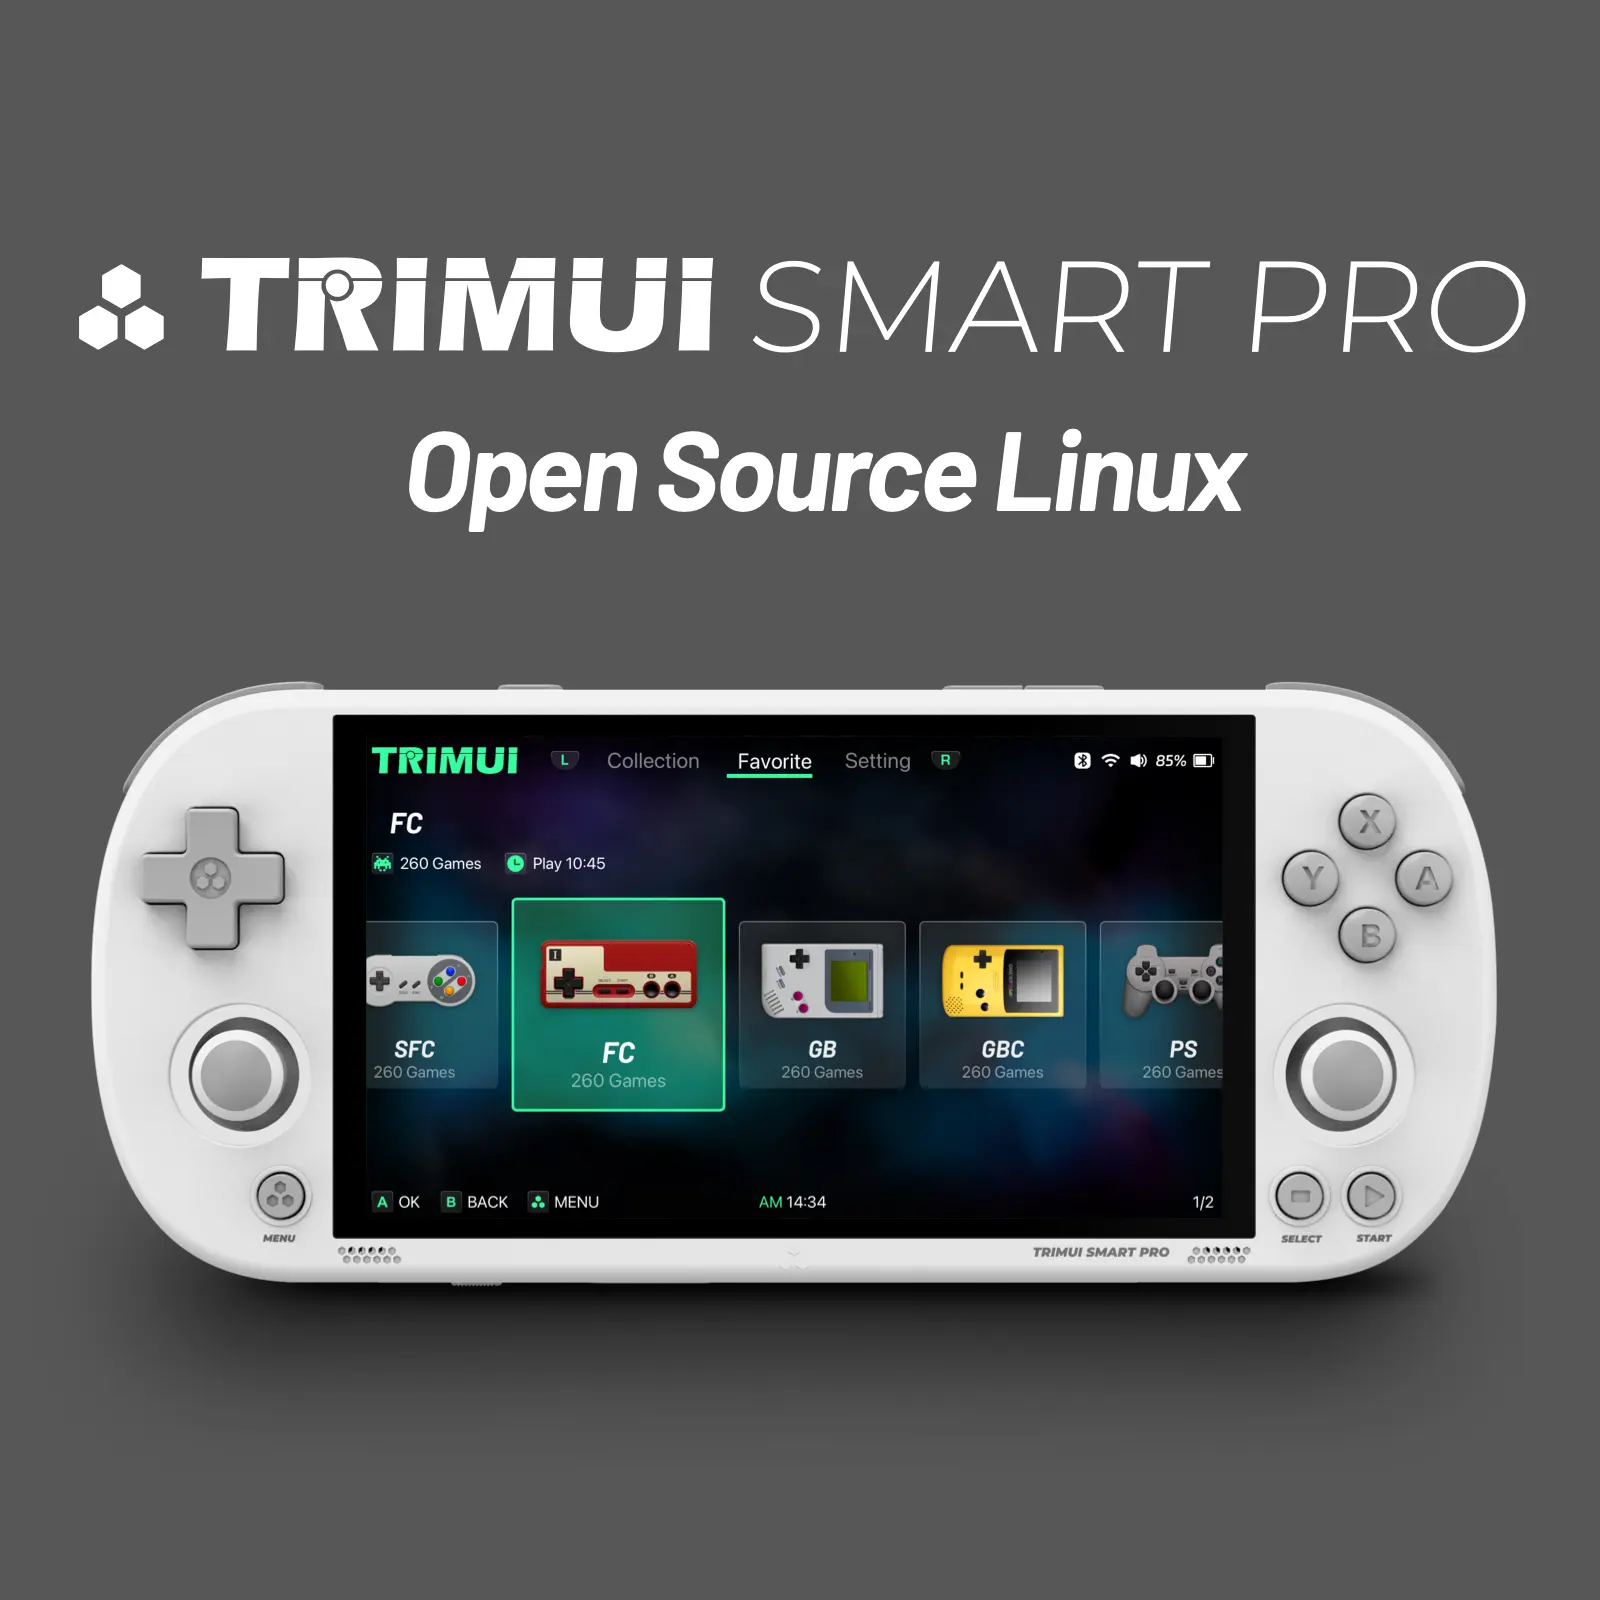 وحدة تحكم ألعاب محمولة جديدة احترافية كلاسيكية من Trimui موديل Smart PRO مزودة بشاشة 4.96 بوصة وحدة تحكم في البلايستيشن من IPS ووحدة تحكم في الواي فاي من Linux وحدة تحكم مفتوحة المخرج ومشغل البلوتوث